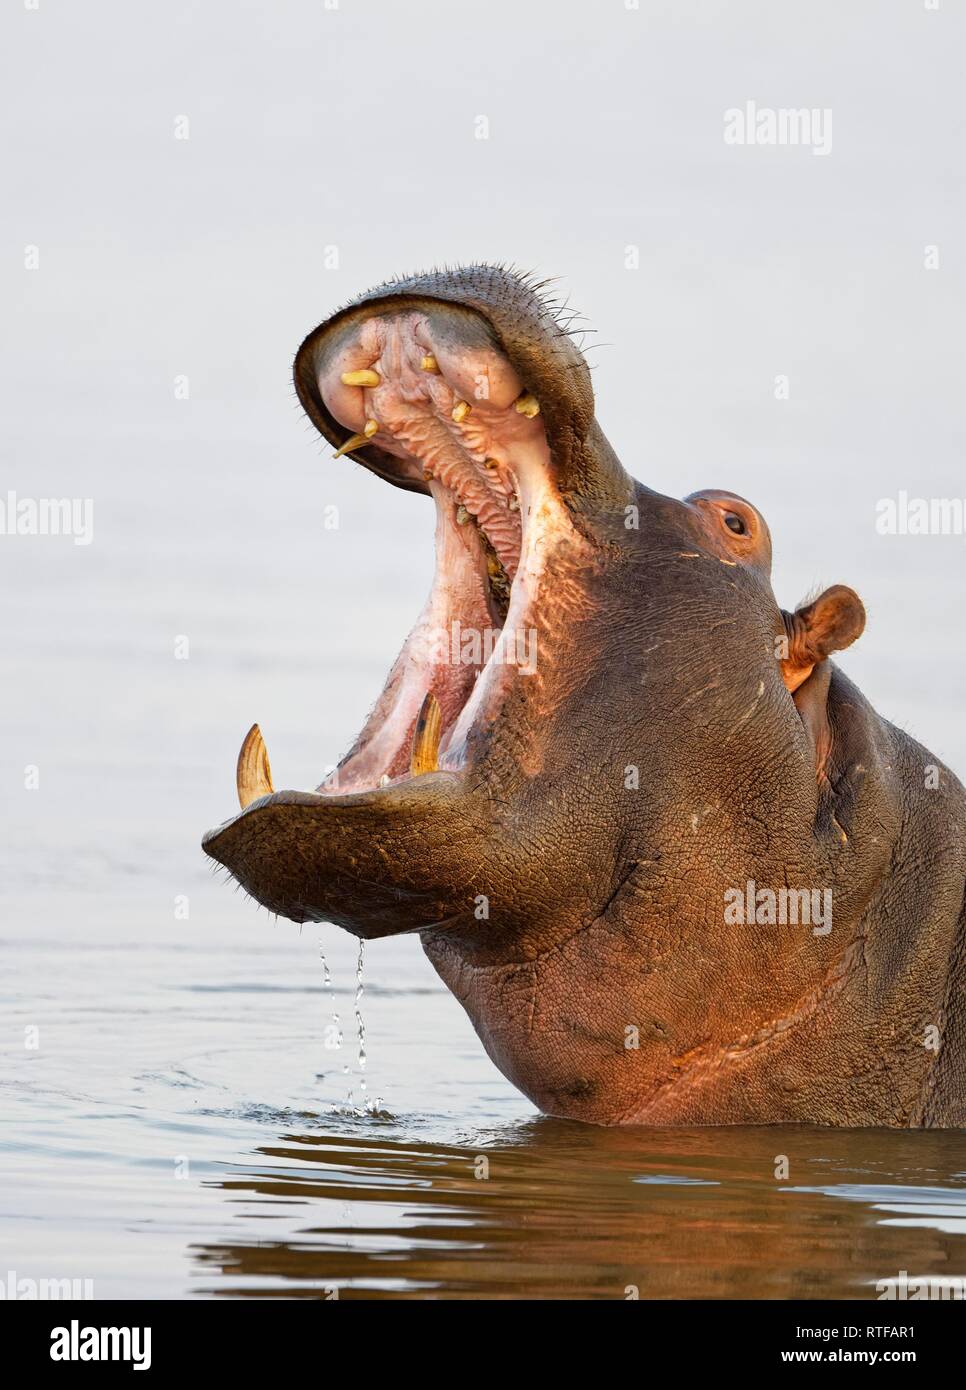 Flusspferd (Hippopotamus amphibius) in Wasser, Tier Portrait mit offenen Mund, KwaZulu-Natal, Südafrika Stockfoto